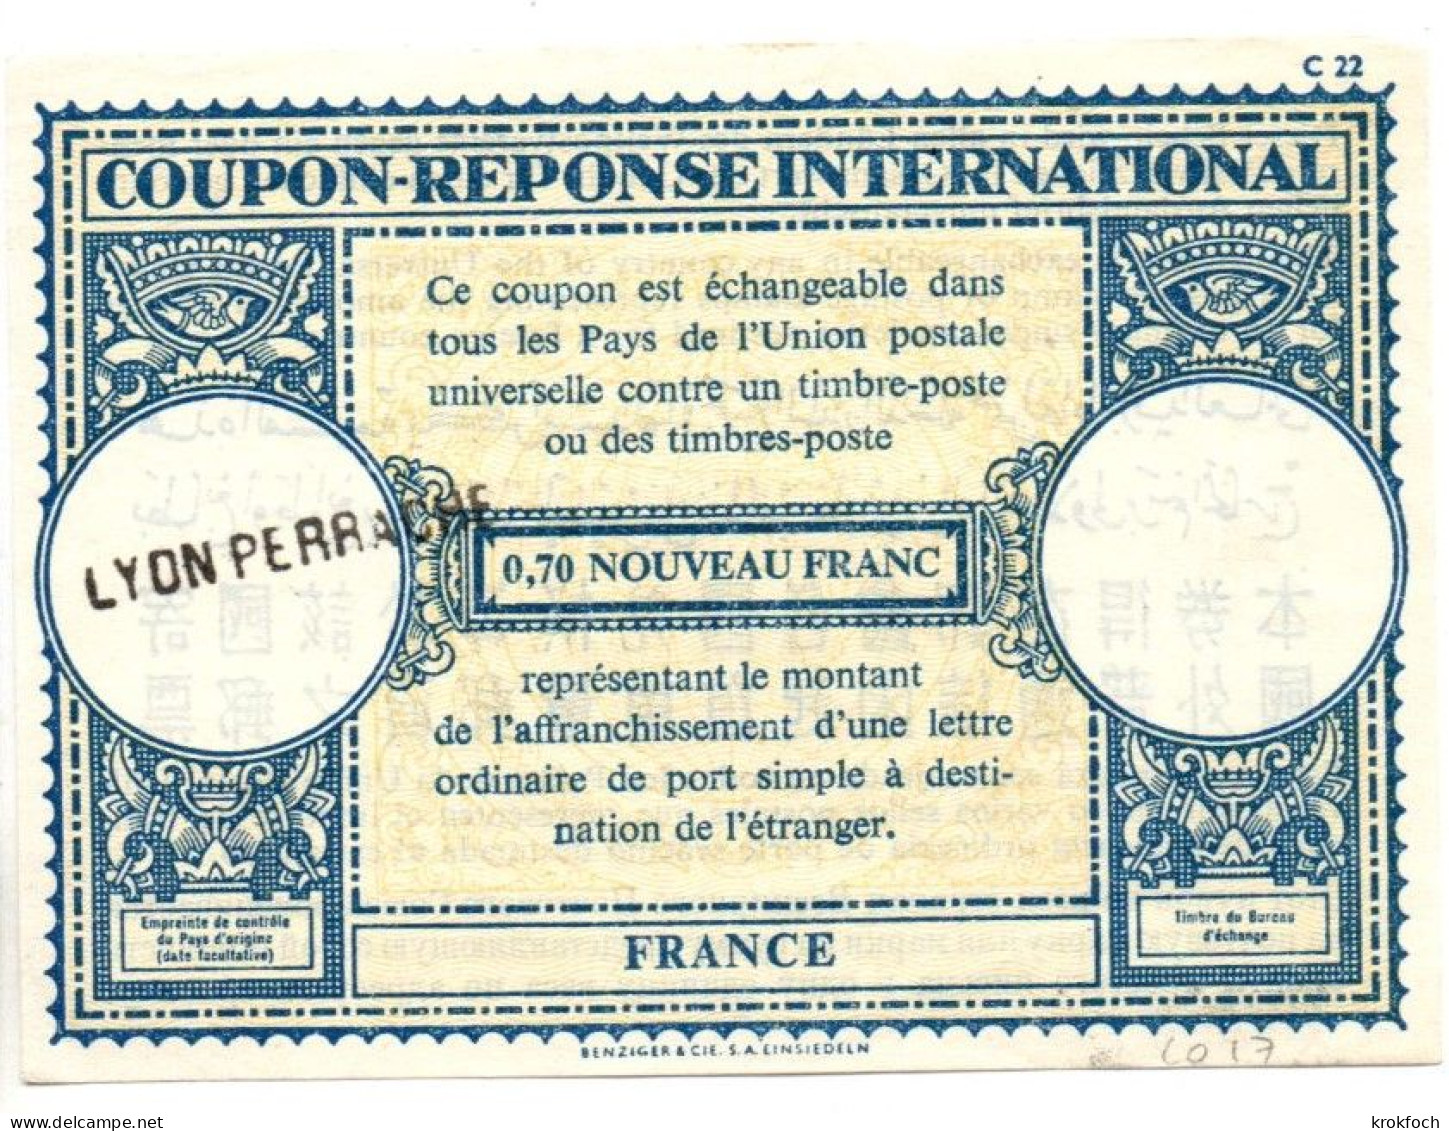 CR France Type Londres L0 17 - 0,70 Nouveau Franc - Griffe Lyon Perrache - CRI IRC - Reply Coupons